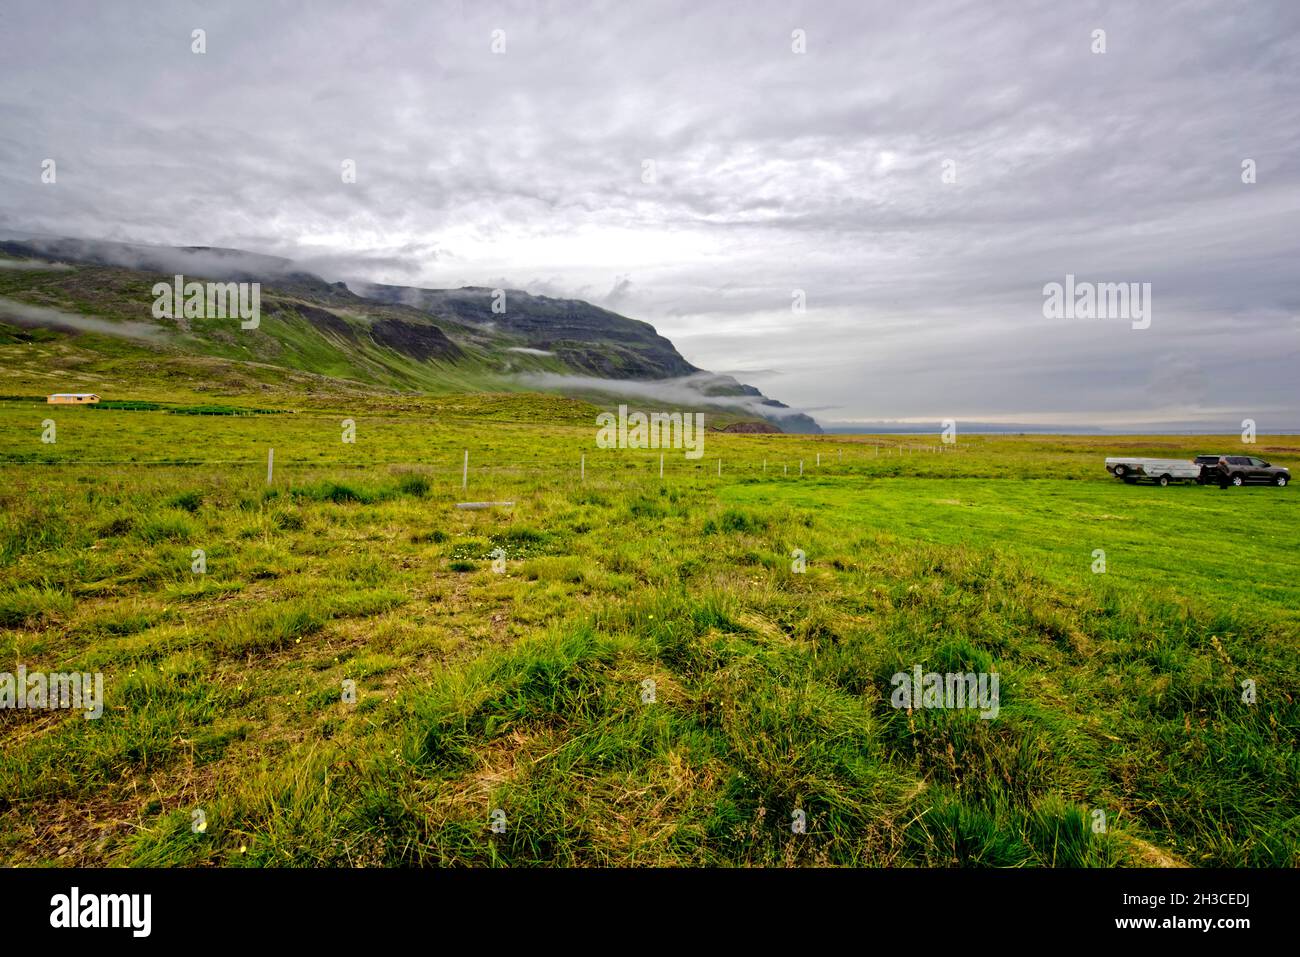 Drangey ist eine unbewohnte isländische Insel, die in der Mitte des Fjordes Skagafjörður gelegen ist.Papageitaucher.Küstenlandschaft auf der Trollaska Stock Photo